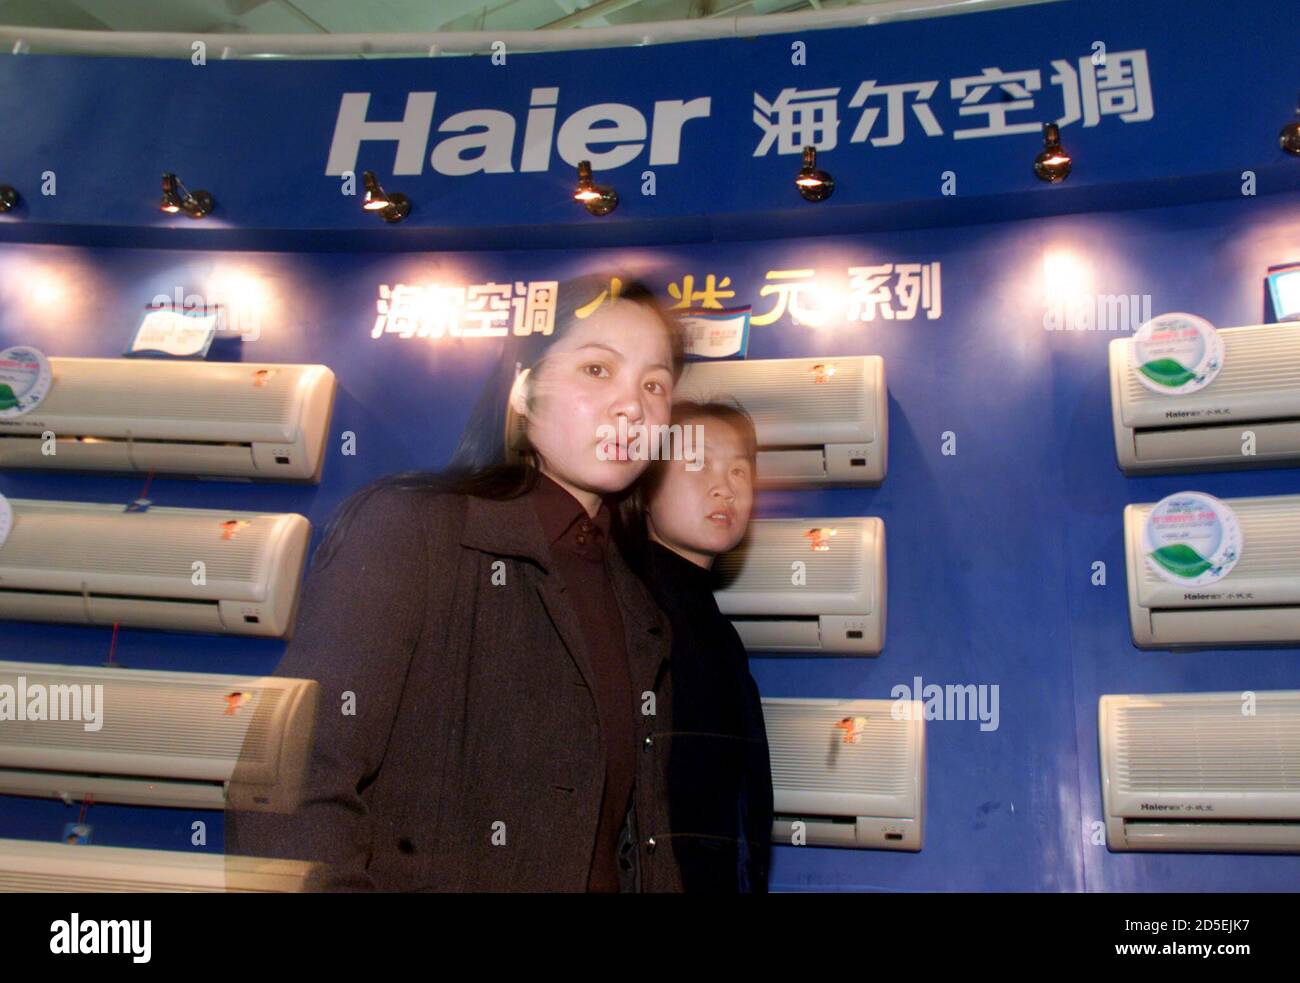 Globo arrendamiento Flor de la ciudad Las mujeres pasan acondicionadores de aire fabricados por la compañía China  Qingdao Haier Group en exhibición en una exposición en Beijing el 8 de  abril. El fabricante chino de electrodomésticos planea recaudar